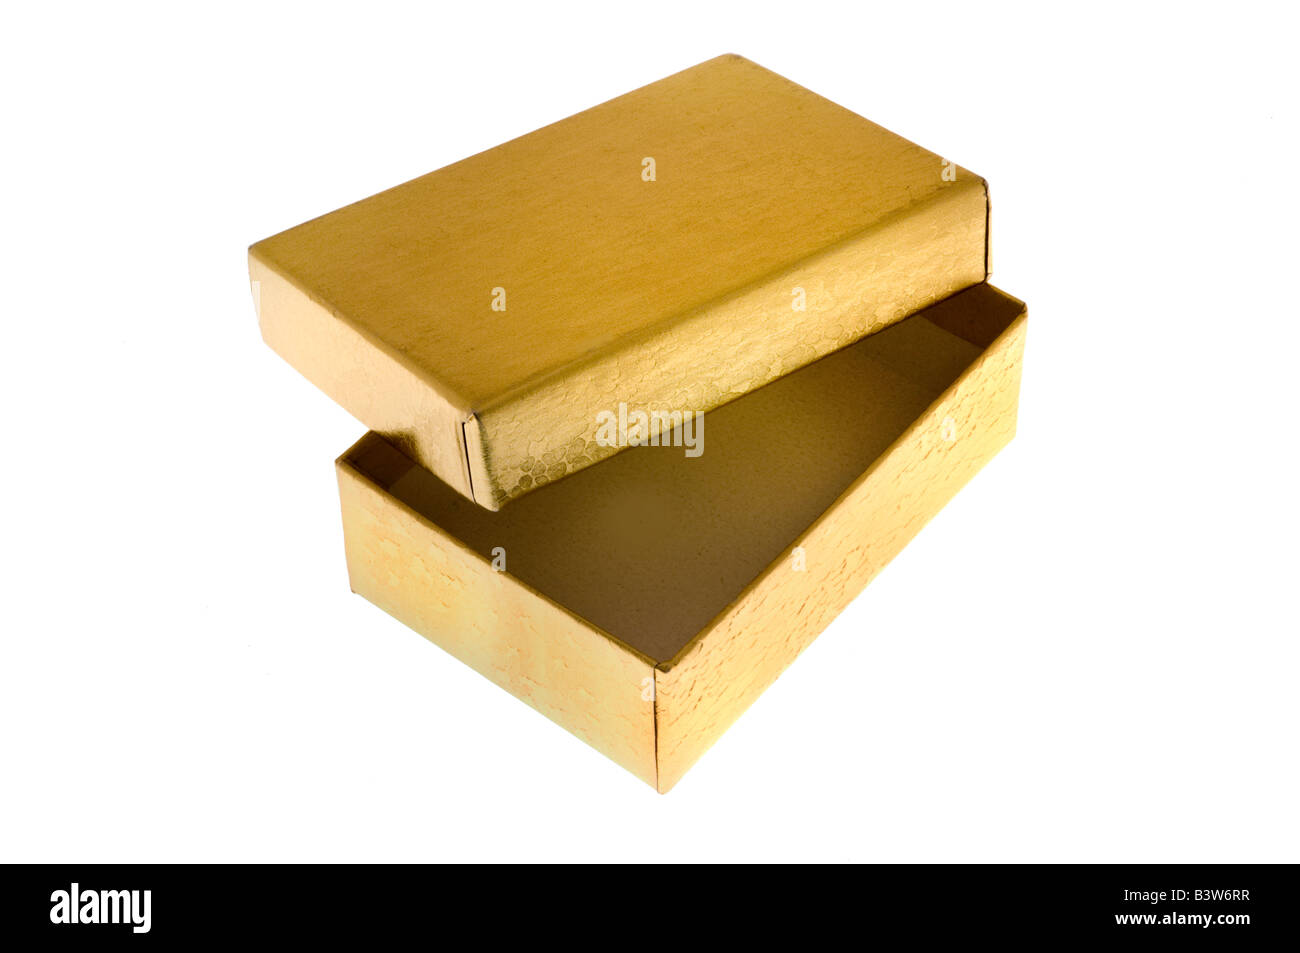 Gold gift box on white Stock Photo